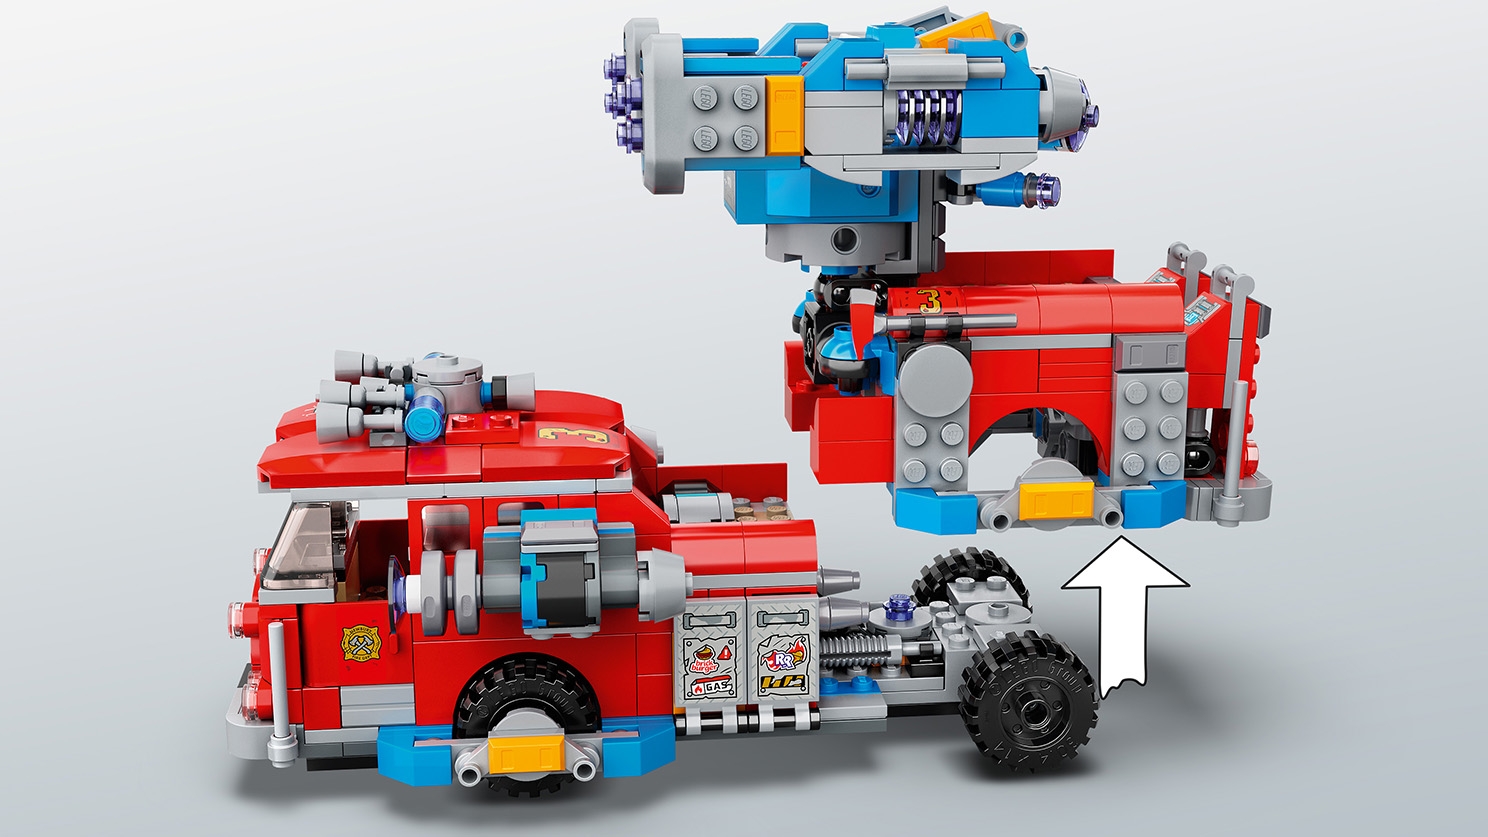 Phantom Fire Truck 3000 70436 - LEGO® Hidden Side Sets - LEGO.com